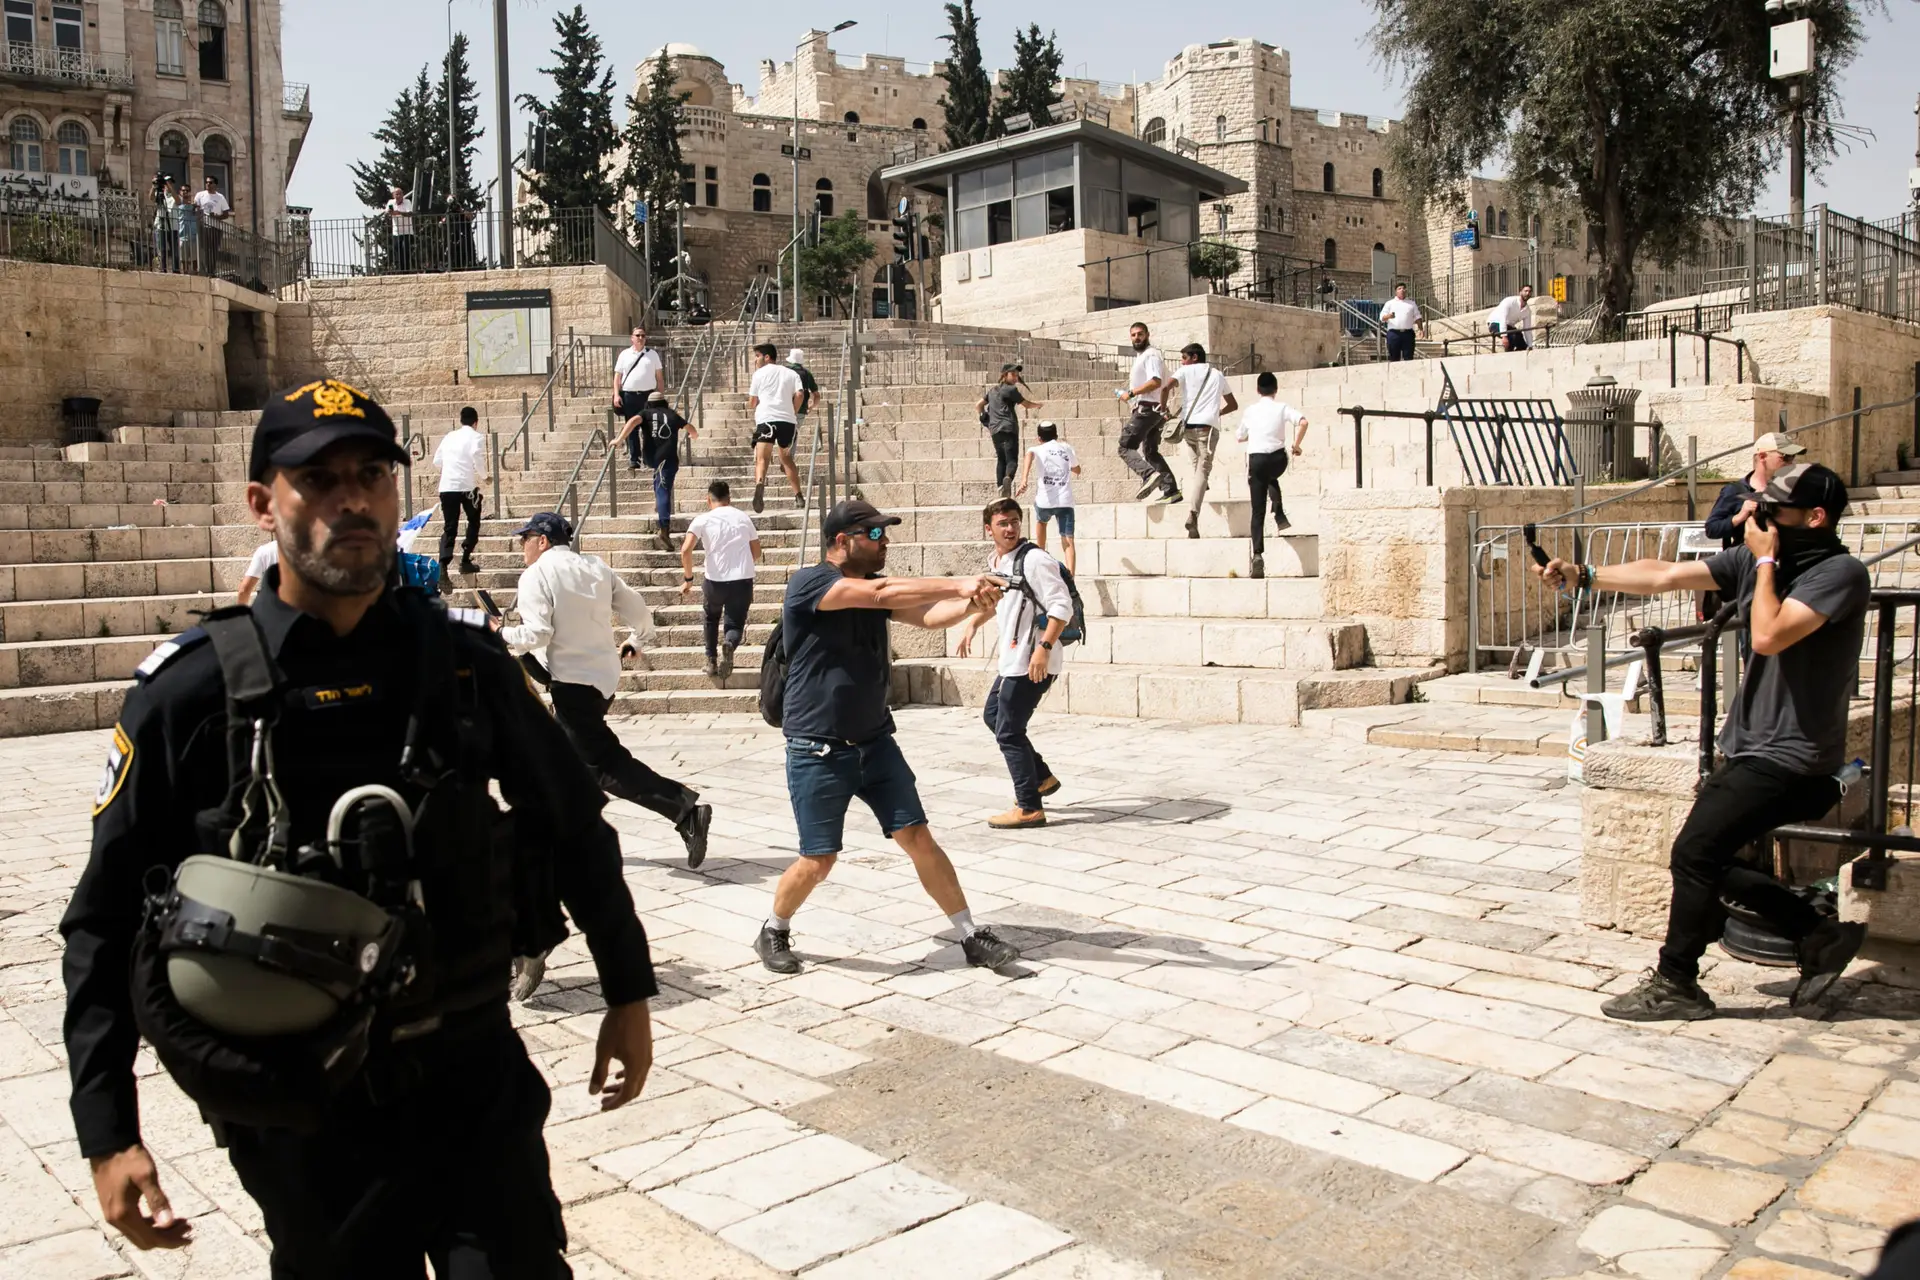 Jerusalém: marcha de nacionalistas israelitas originou confrontos que acabaram com feridos e detenções